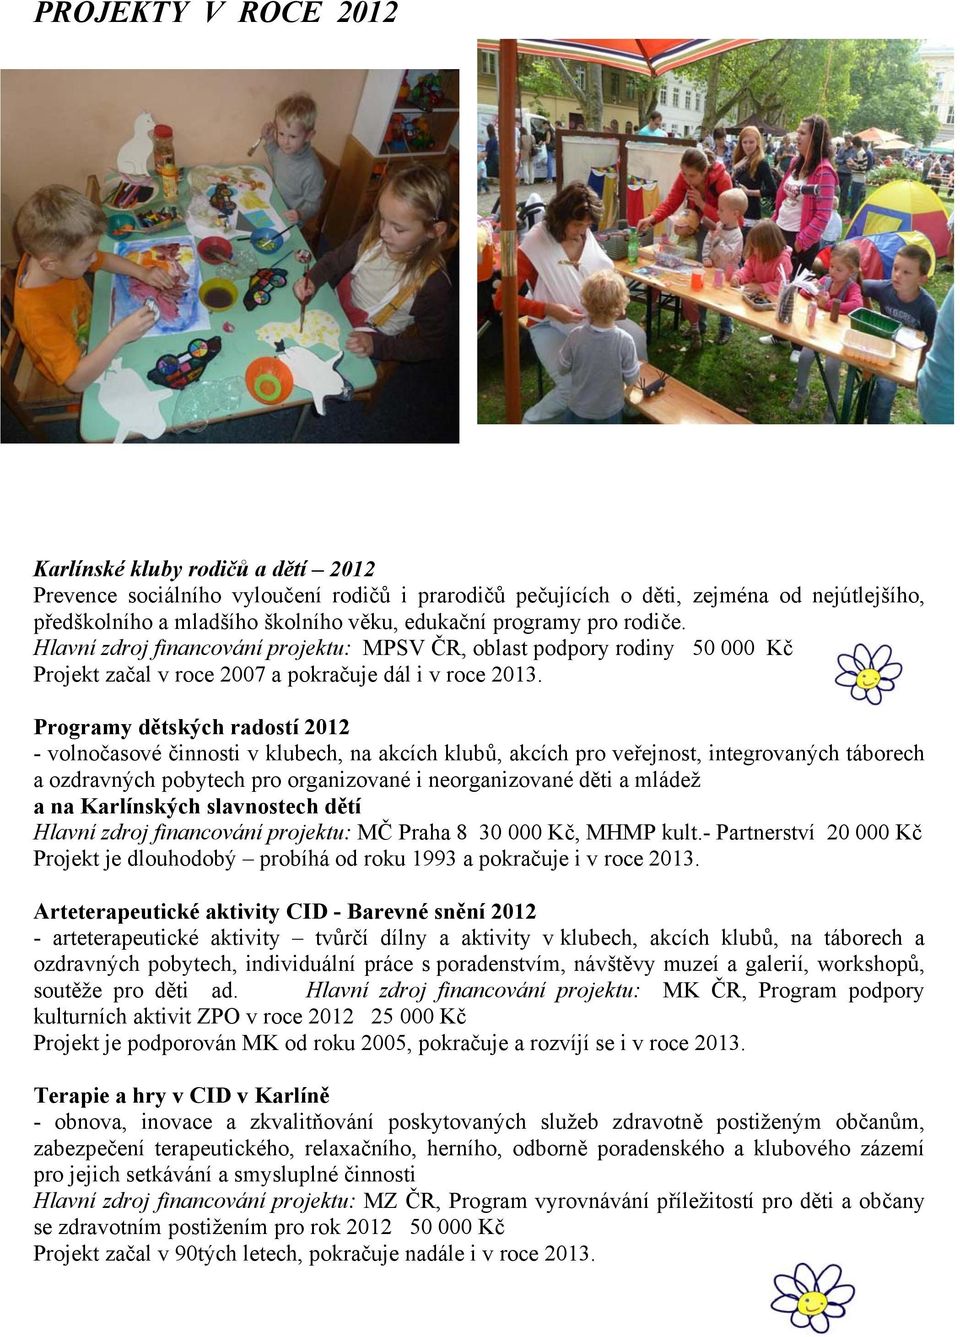 Programy dětských radostí 2012 - volnočasové činnosti v klubech, na akcích klubů, akcích pro veřejnost, integrovaných táborech a ozdravných pobytech pro organizované i neorganizované děti a mládež a